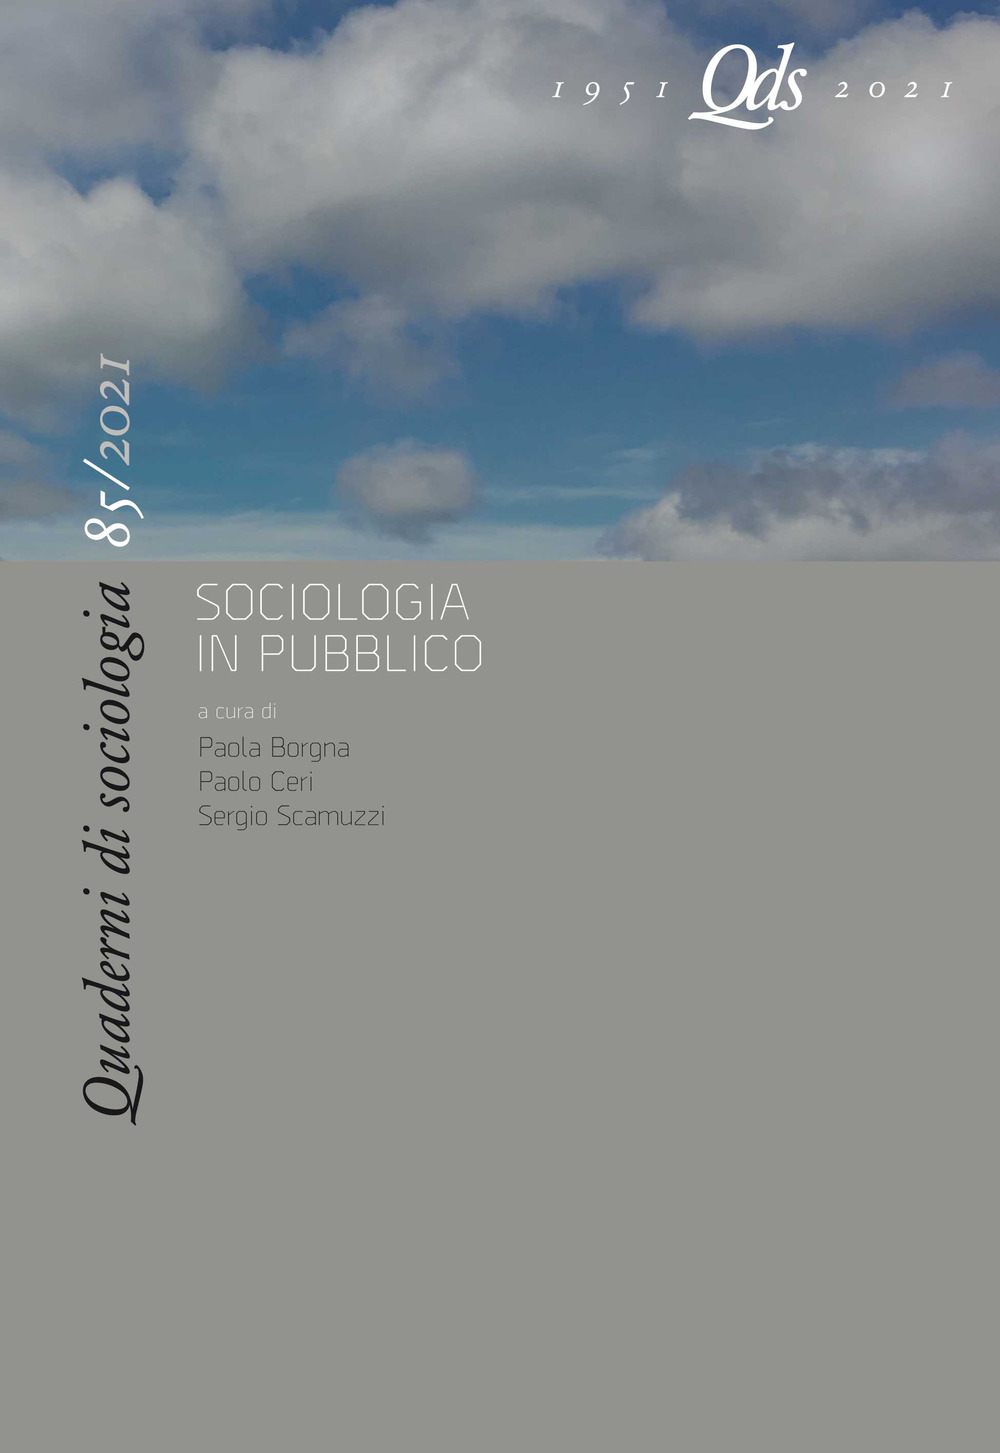 Quaderni di sociologia (2020). Vol. 85: Sociologia in pubblico